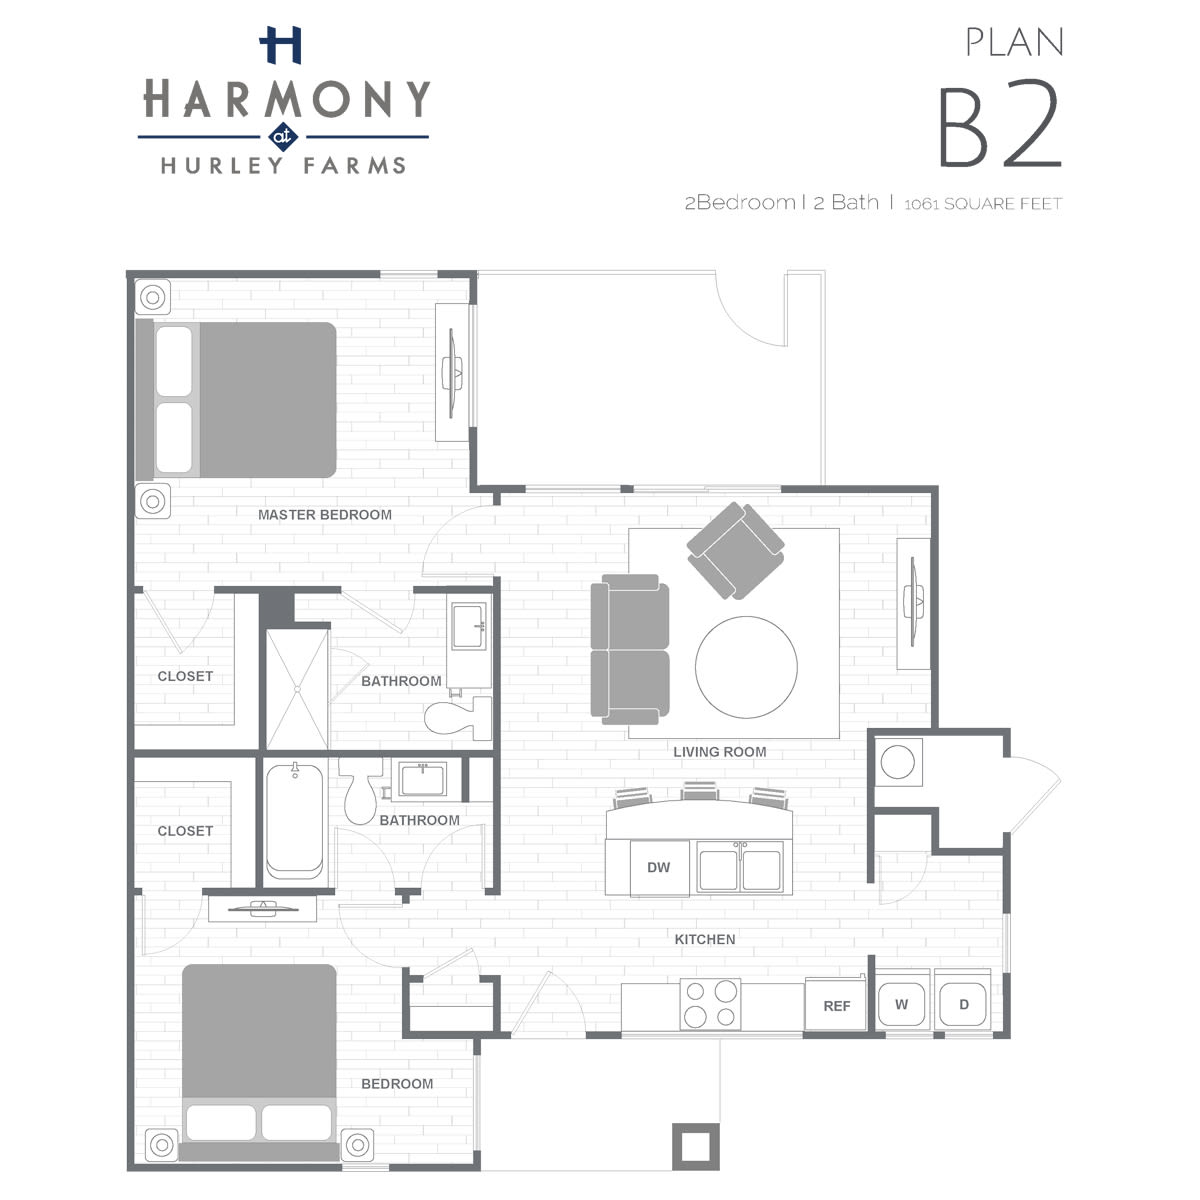 Plan B2 Two Bedroom floor plan